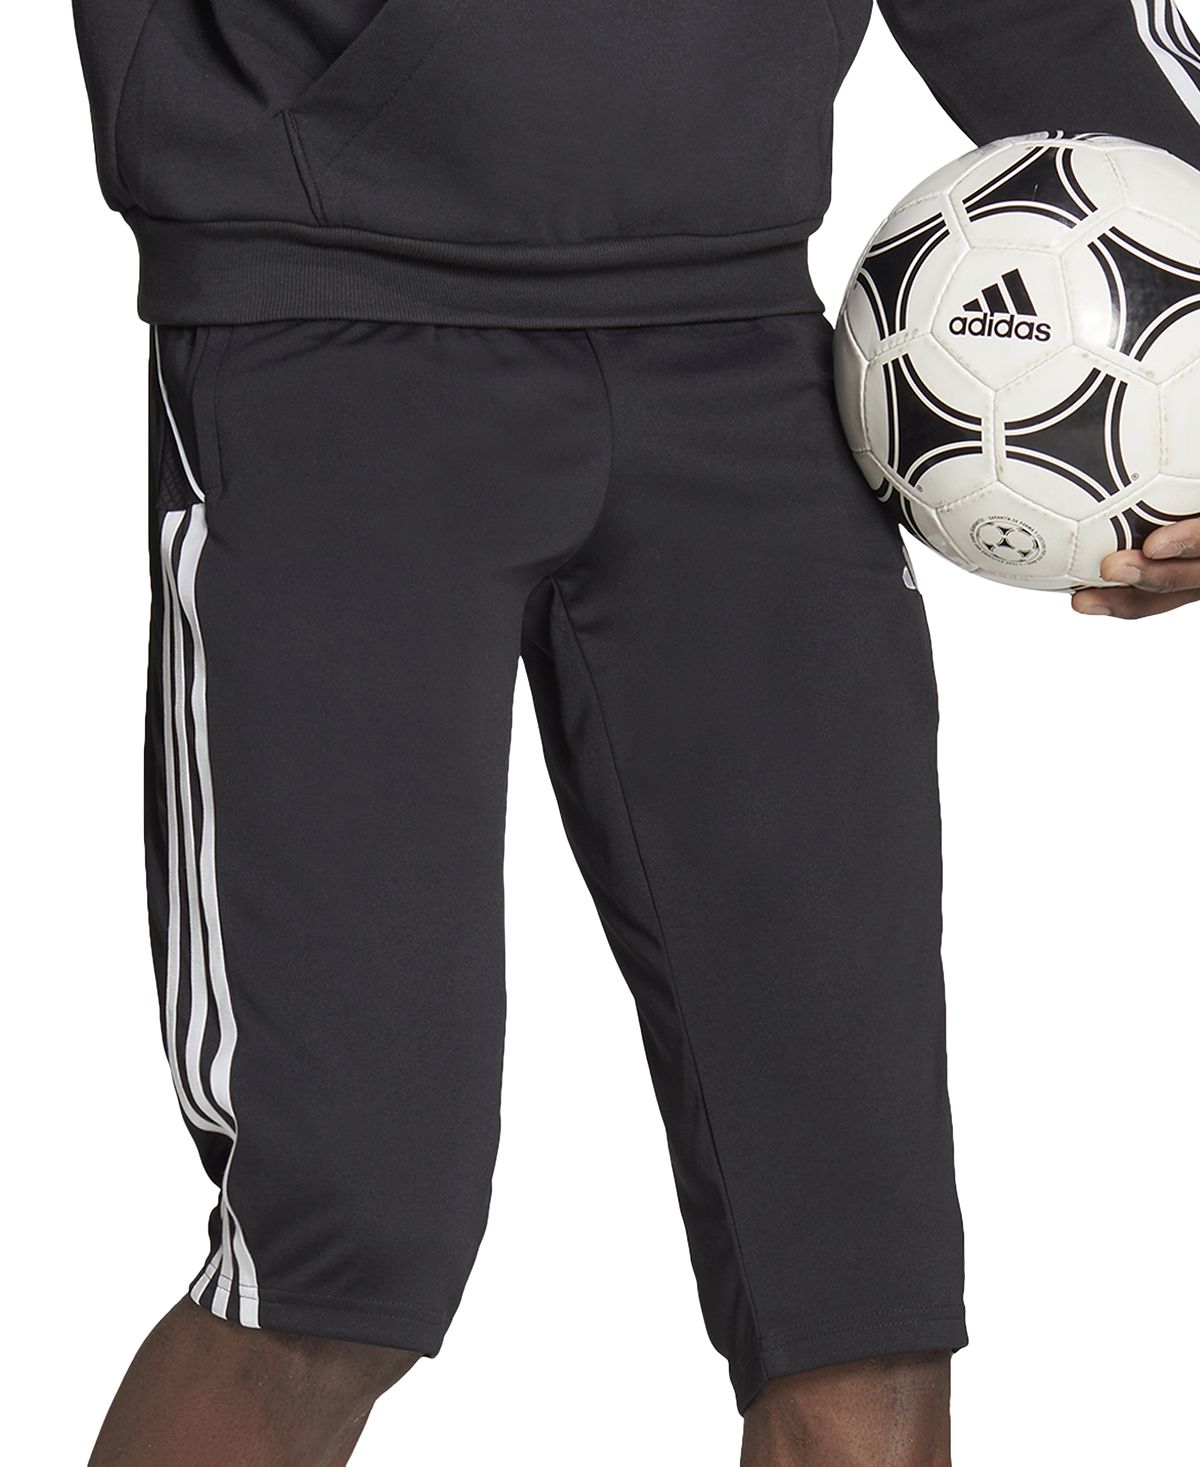 Мужские джоггеры узкого кроя Tiro 23 League Performance с 3 полосками и размером 3/4 adidas цена и фото